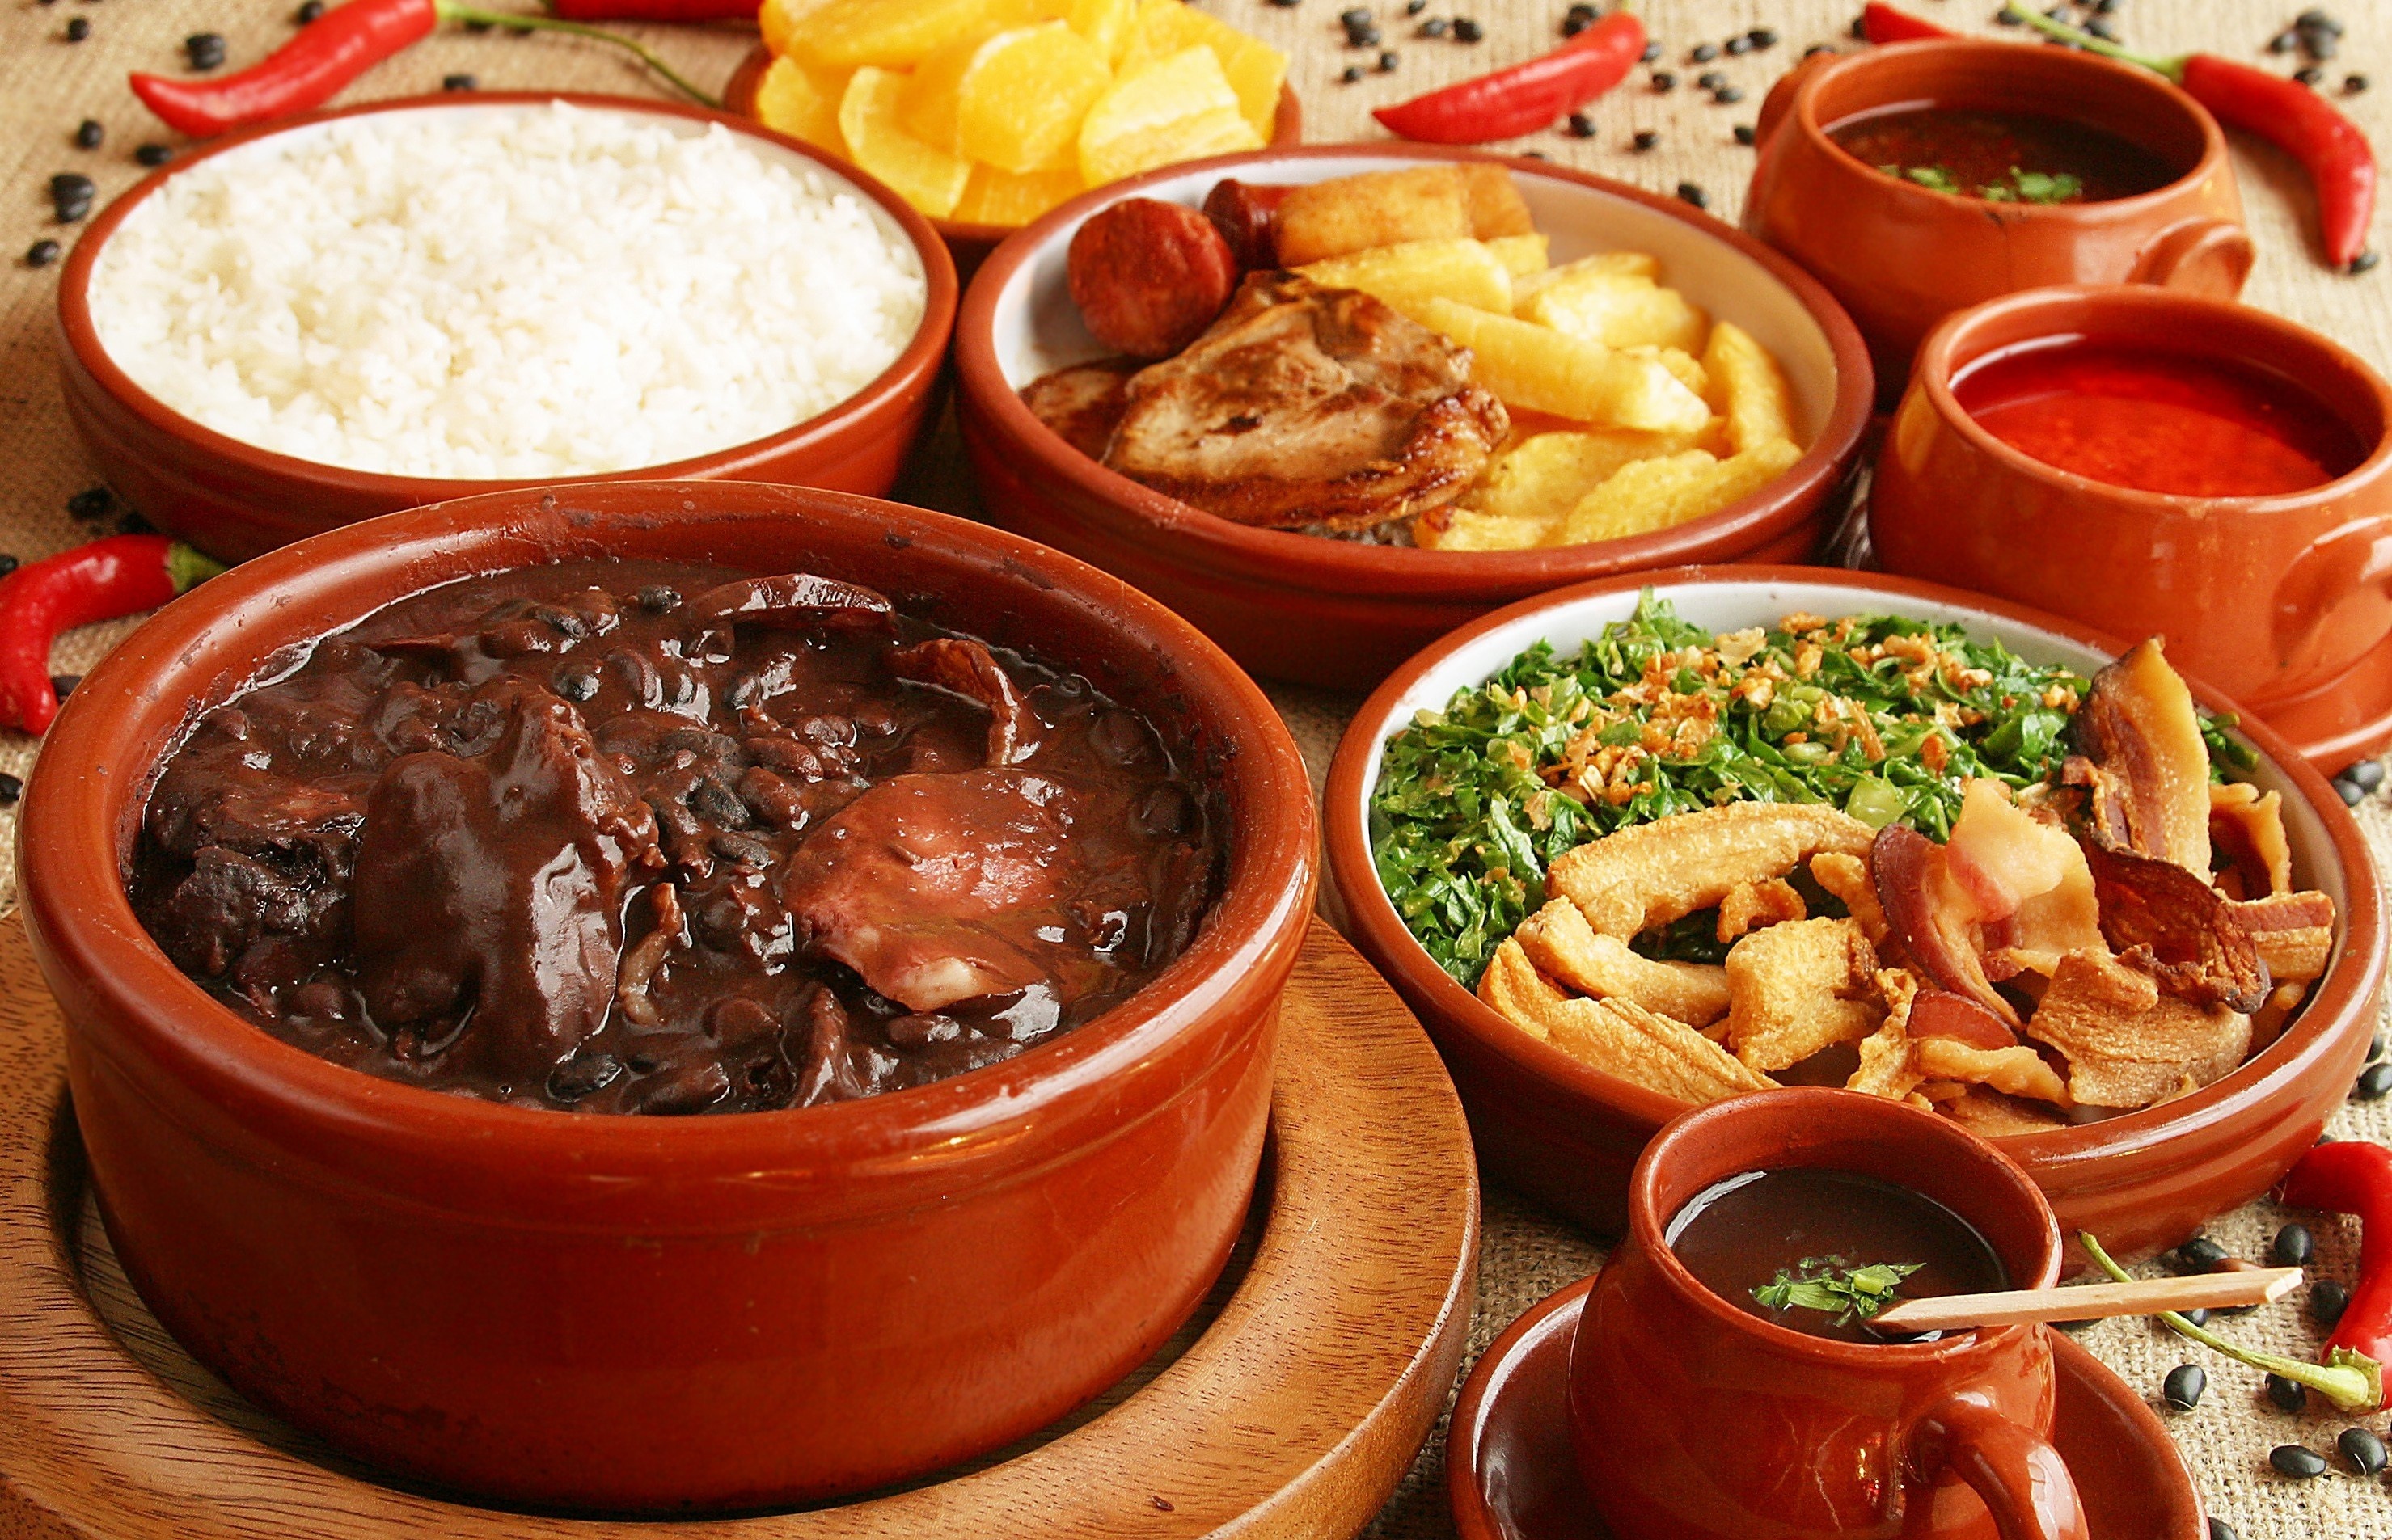 巴西国菜 黑豆炖肉饭 feijoada (6人份)